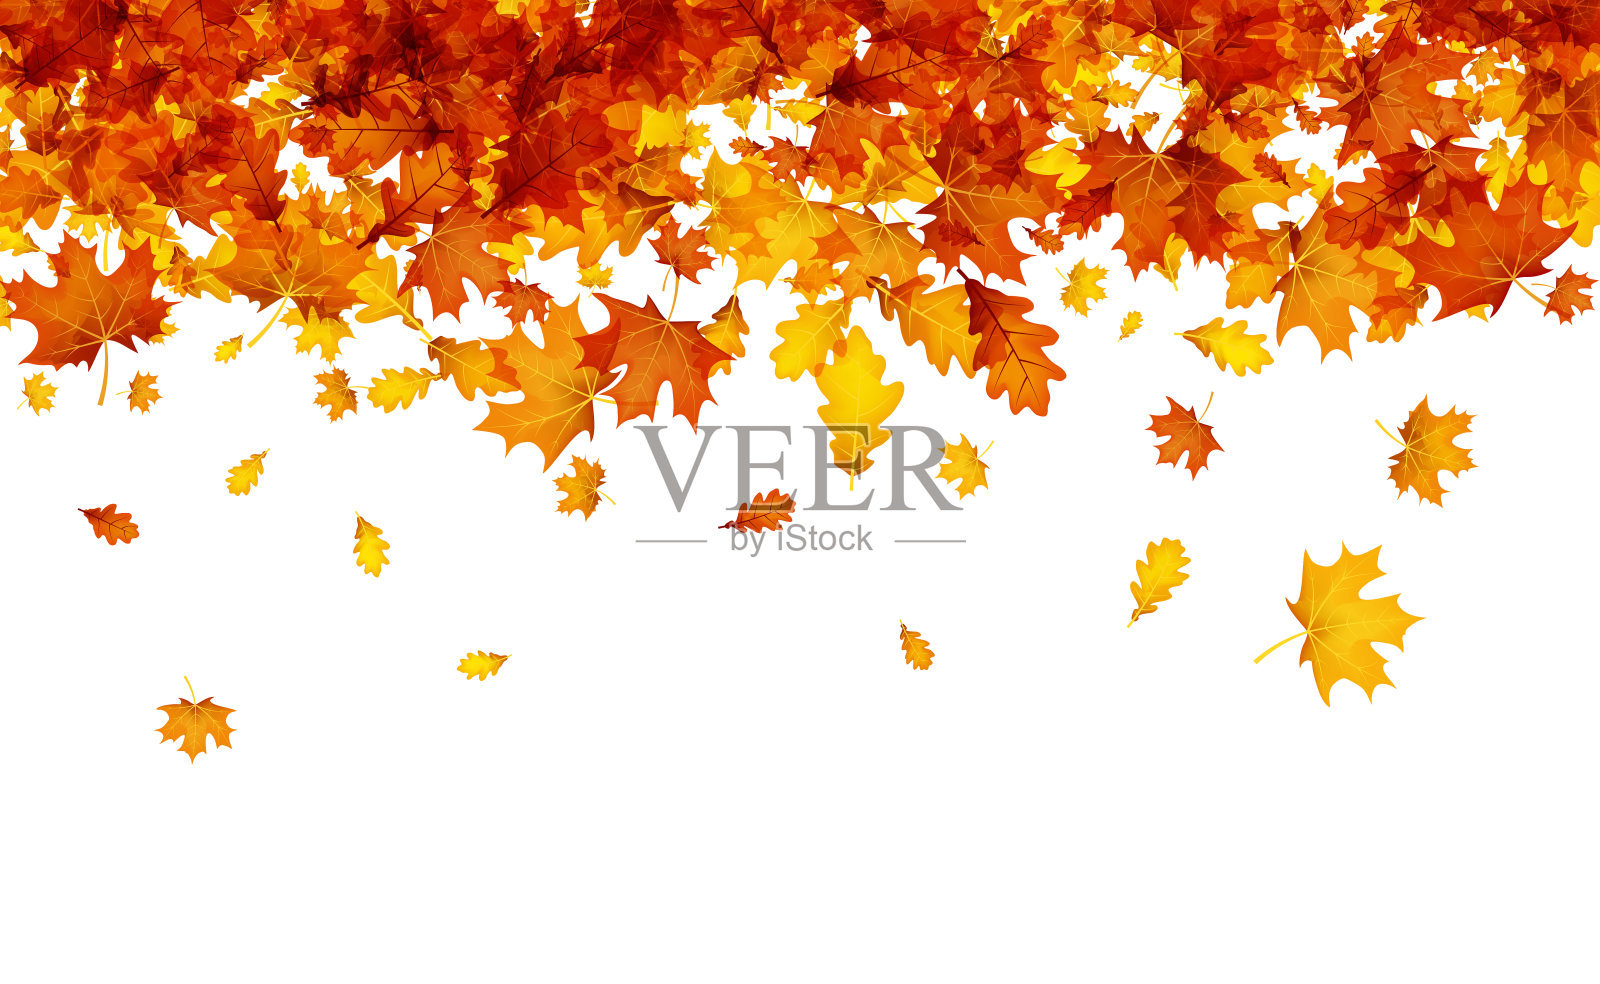 秋天的背景是橙色的叶子。设计元素图片